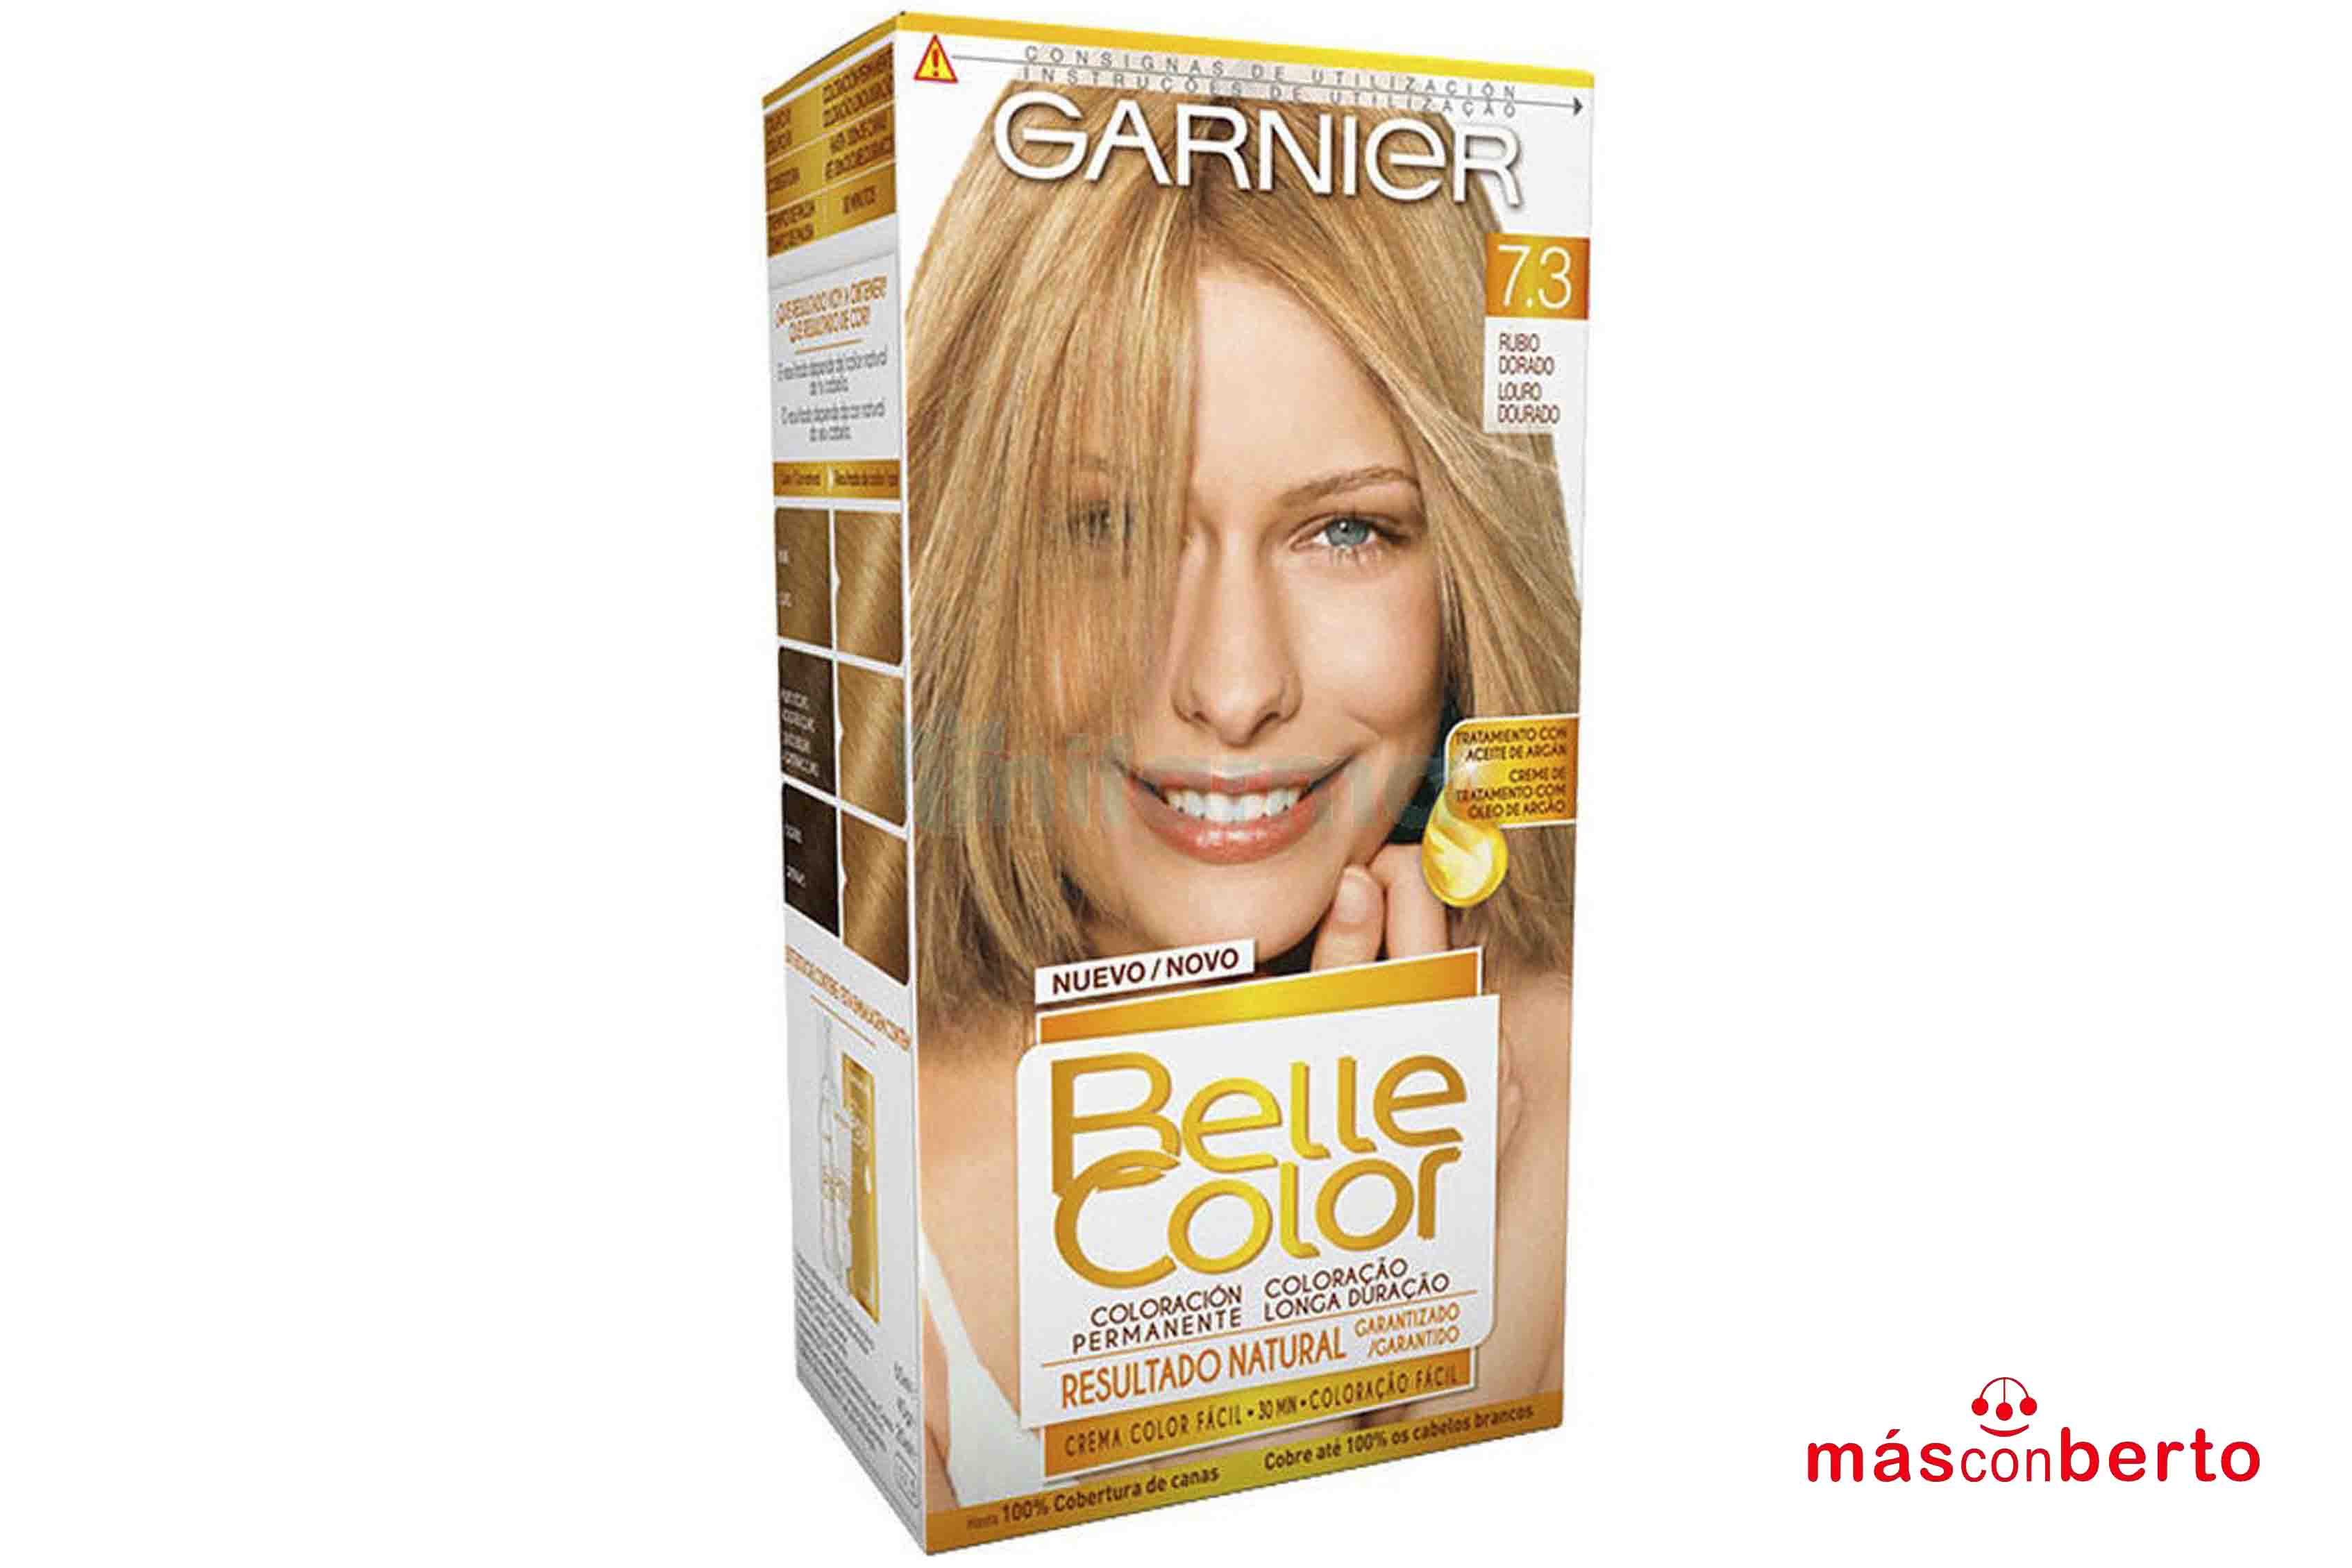 Tinte Belle Color Garnier...